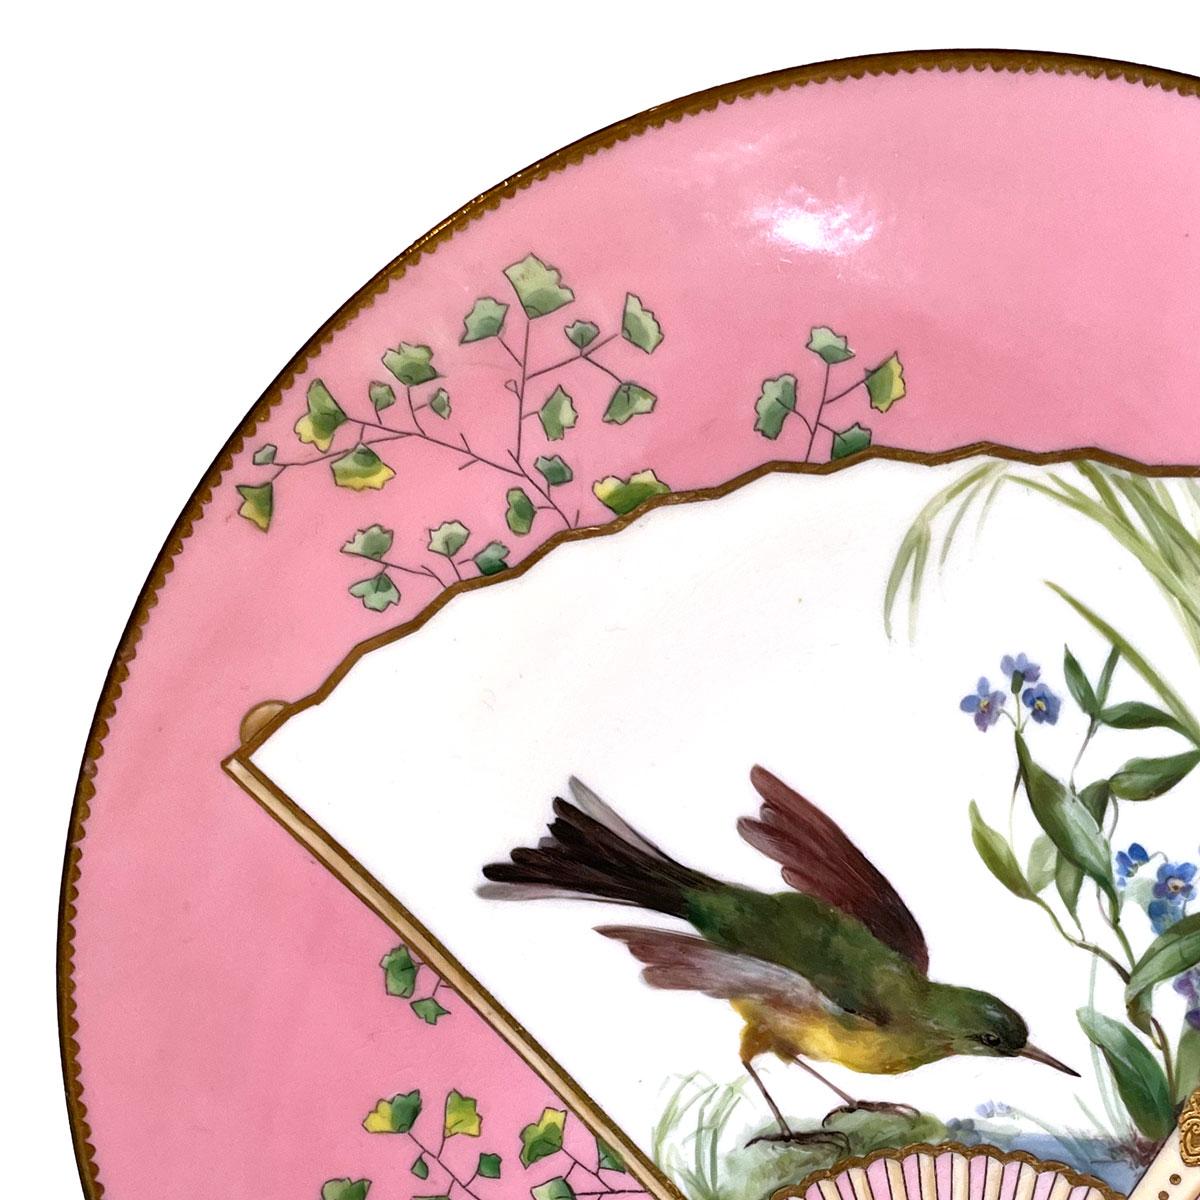 Rosa Minton-Porzellanteller im Stil des Japonismus, hergestellt von Christopher Dresser. Runder Teller, verziert mit einem orientalischen Fächer, der einen schönen und bunten Vogel darstellt. Hübsche Dekoration mit Pflanzen und orientalischen